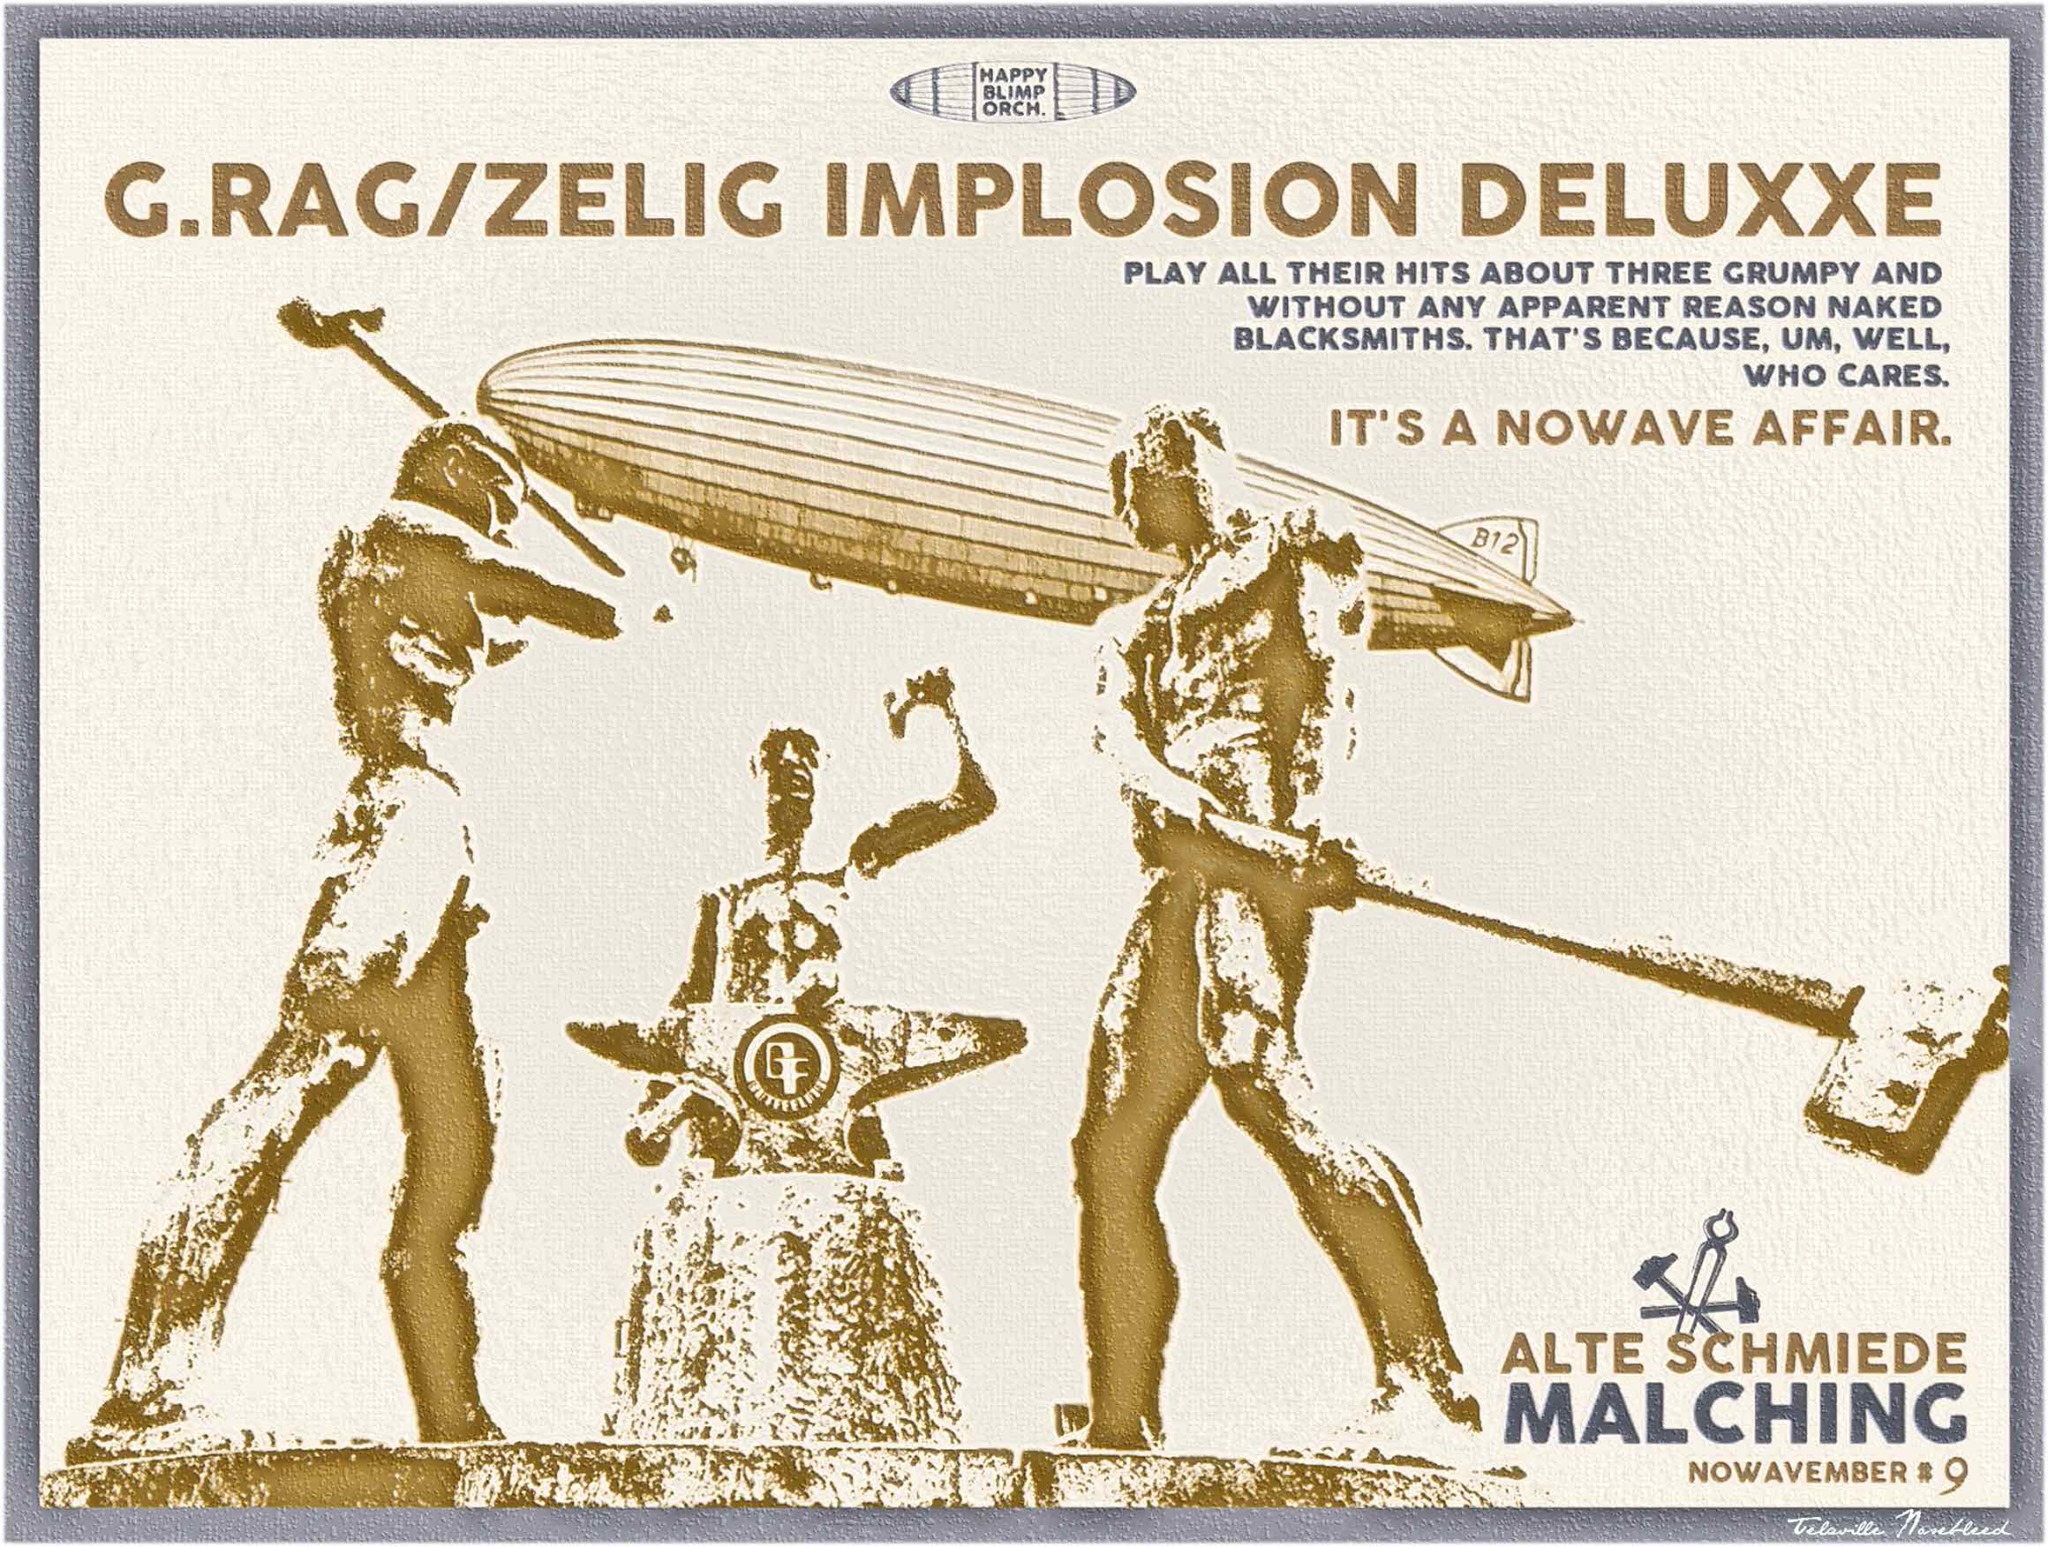 g.rag / zelig Implosion - deluxxe in der alten Schmiede Malching